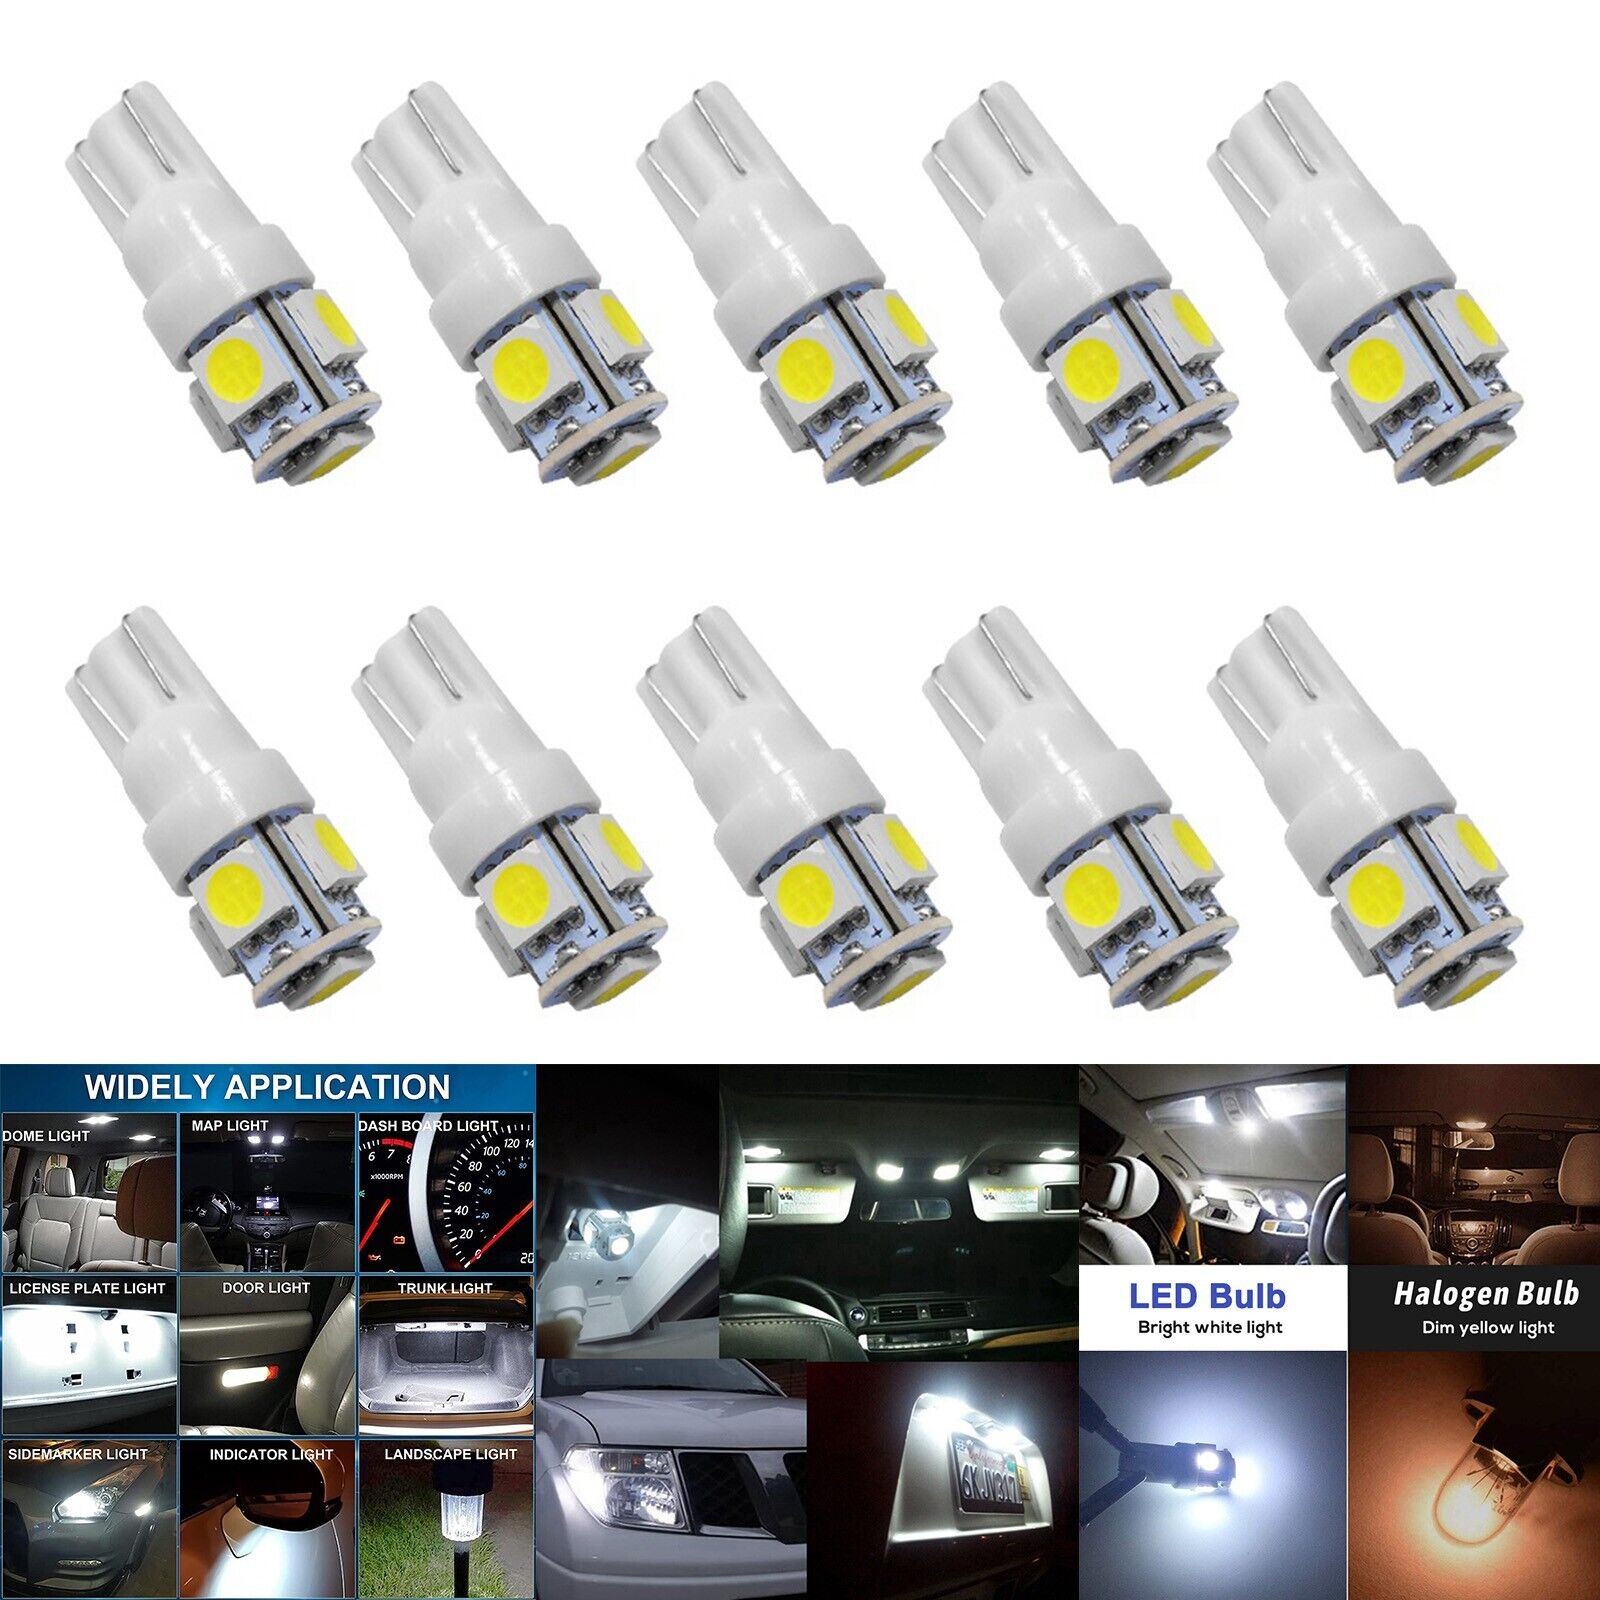 10x T10 2825 921 168 194 Super White 6000K 5-SMD LED License Plate Light Bulbs